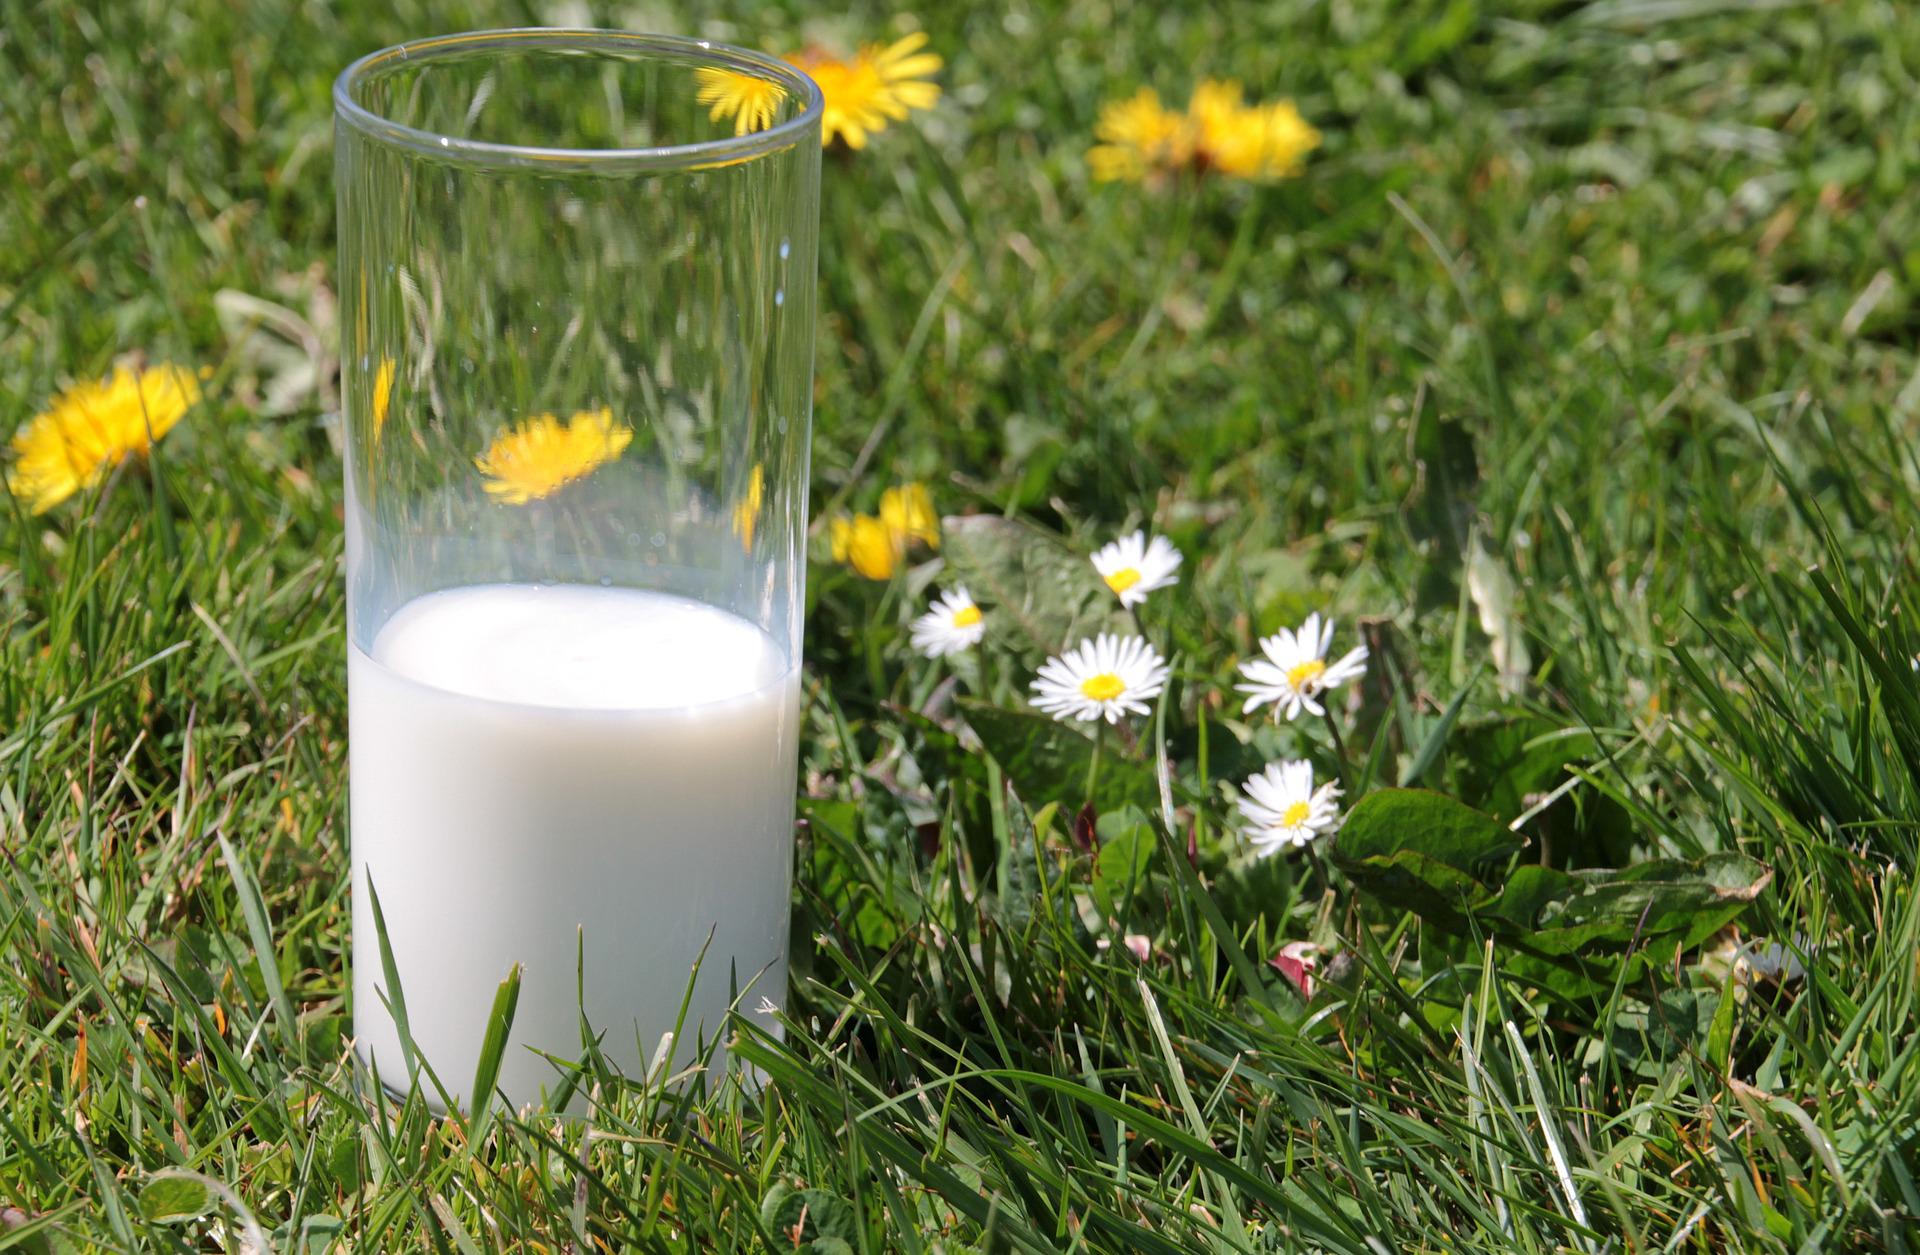 Kirja maidosta on ihmiskeskeinen ja pitää lehmän osaa maitokoneena luonnollisena